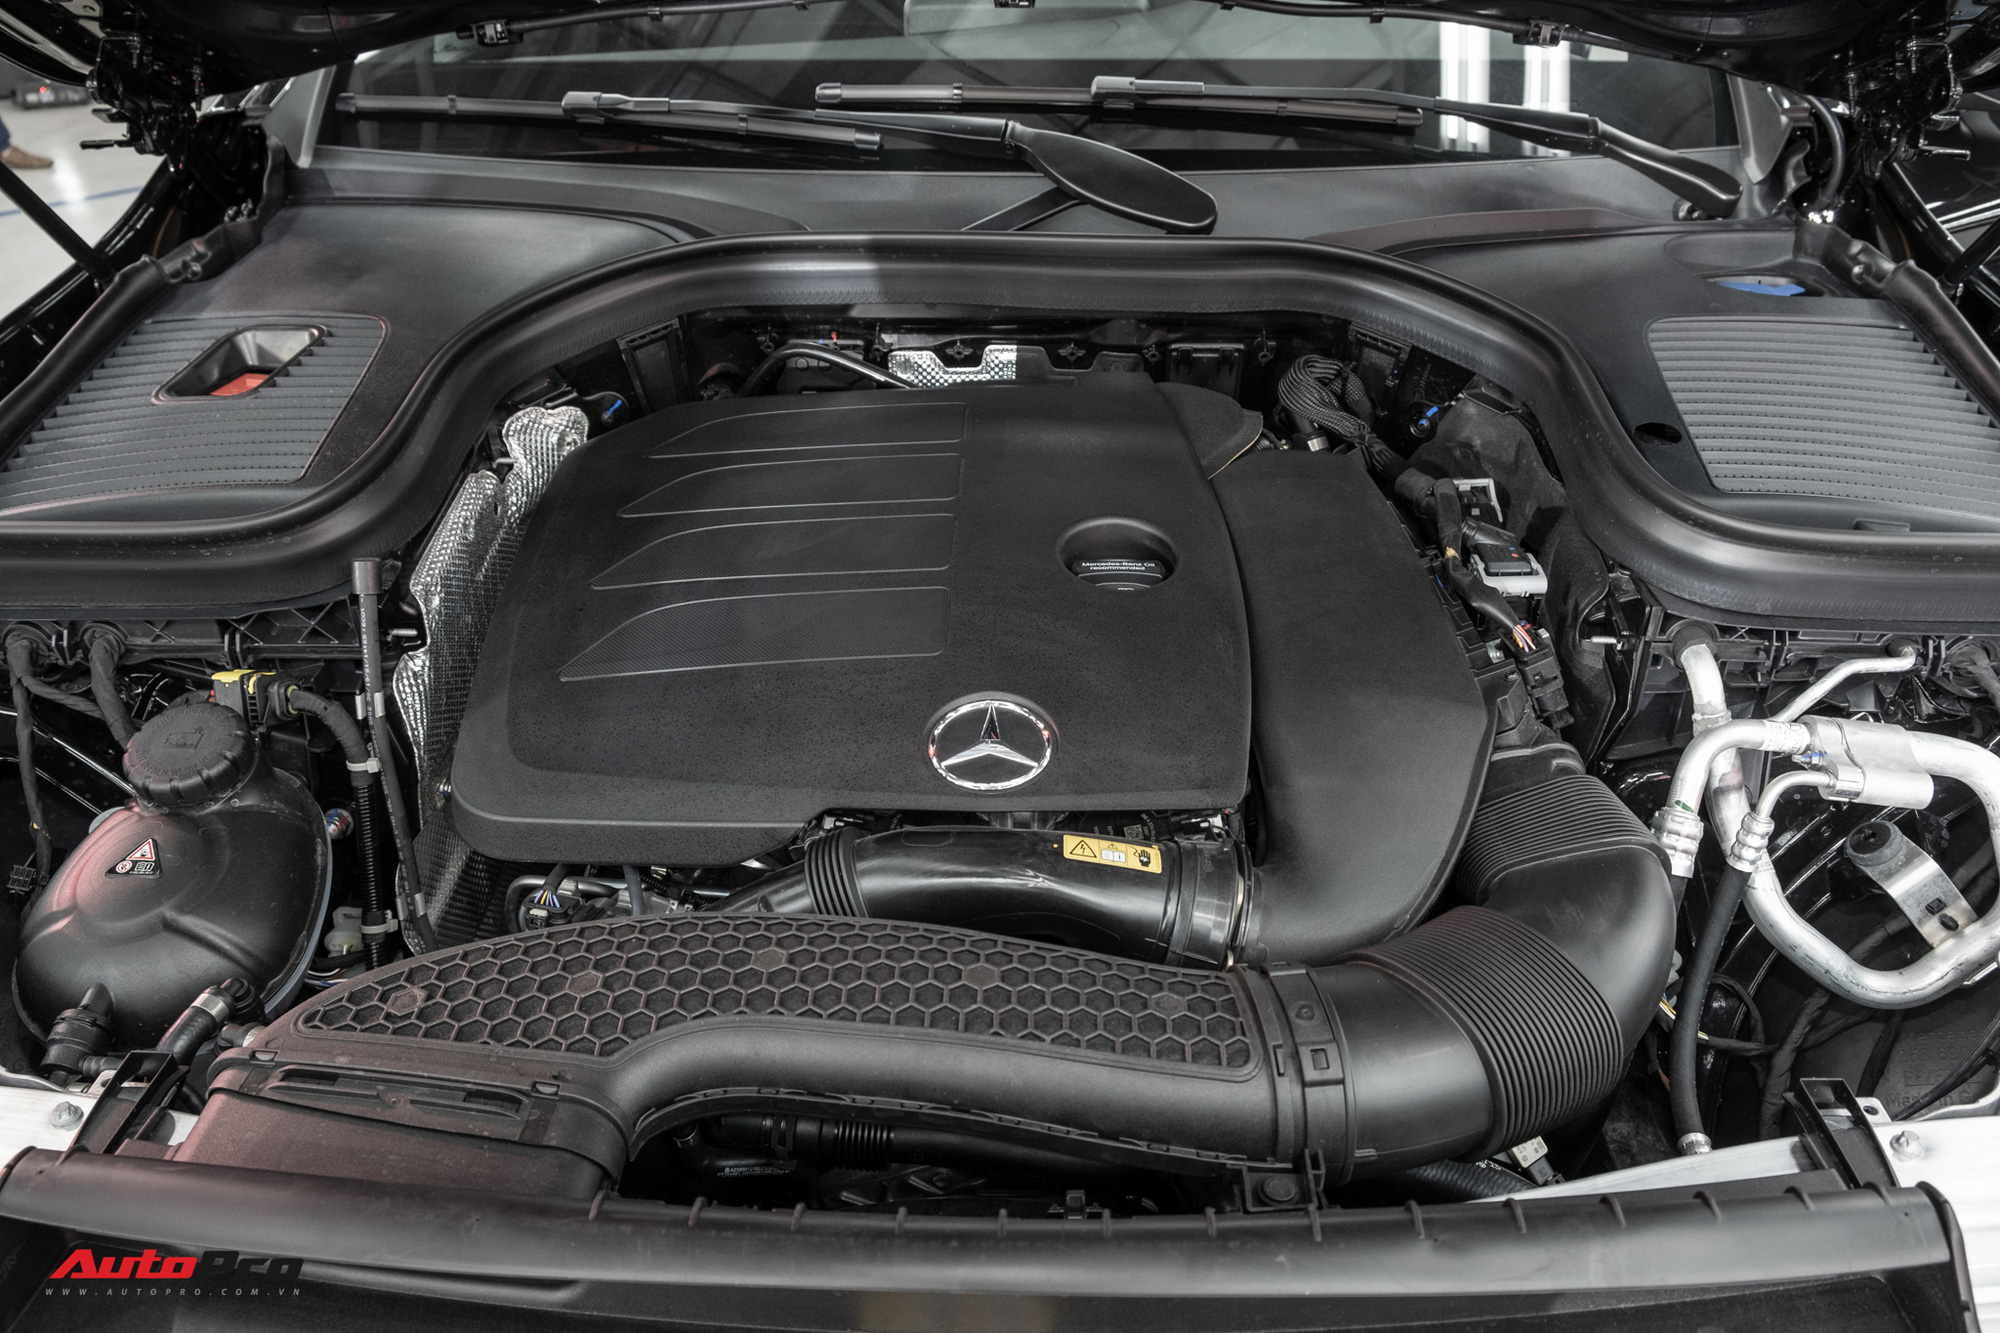 Ra mắt Mercedes-Benz GLC 300 lắp ráp trong nước: Thêm trang bị, giá thấp hơn 161 triệu đồng, càng áp lực lên BMW X3 - Ảnh 5.